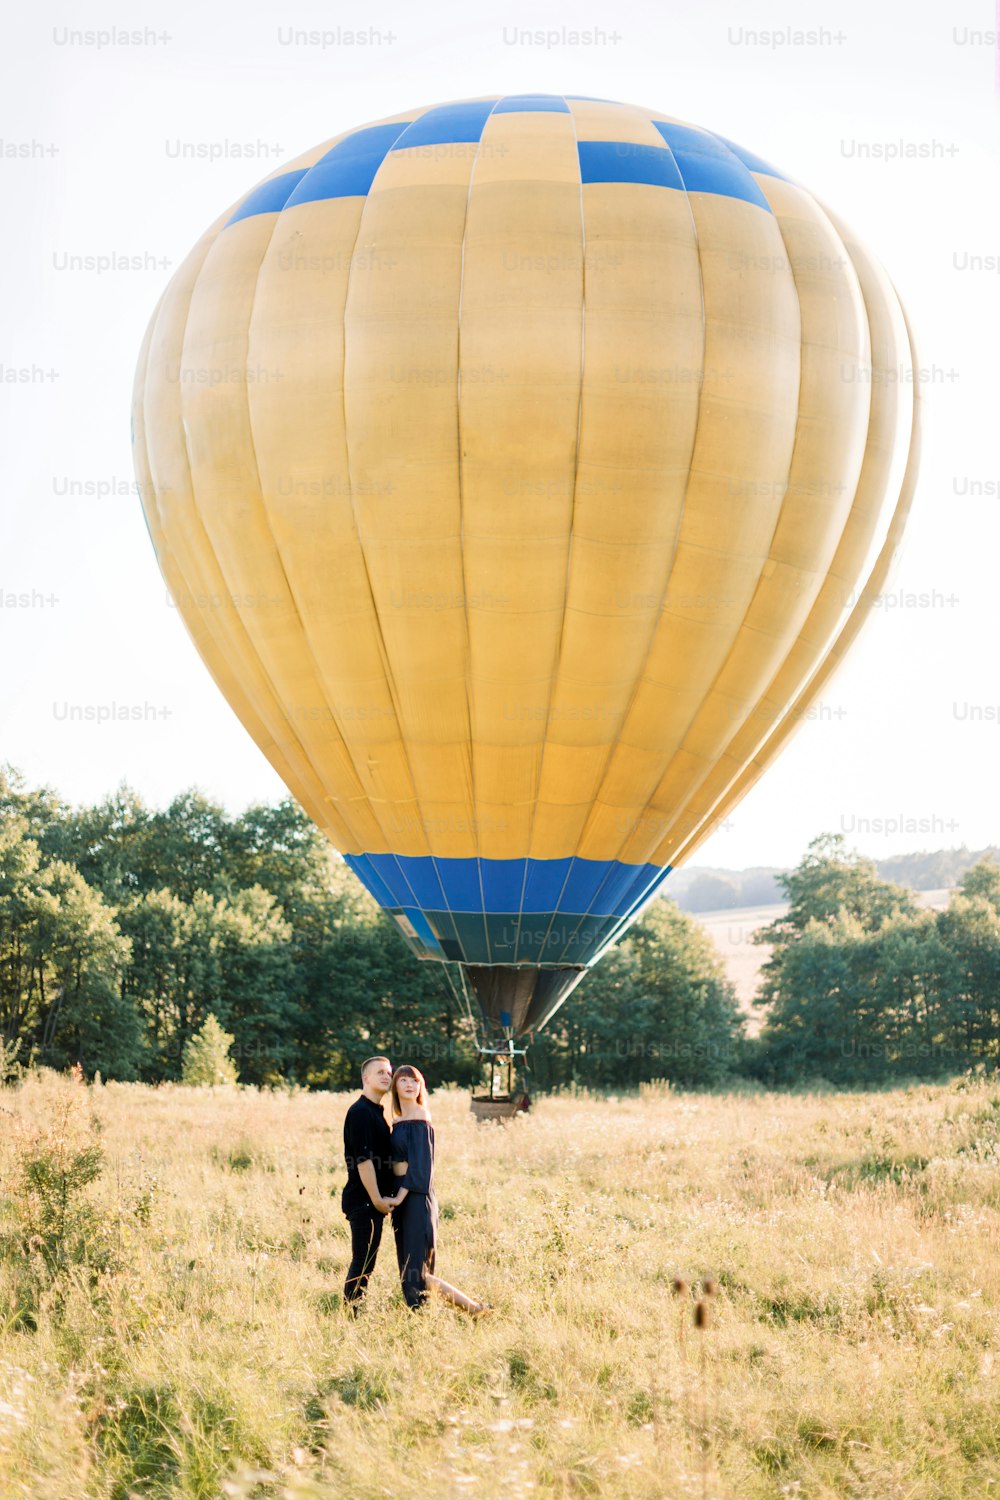 Retrato de cuerpo entero de una encantadora pareja joven vestida de negro, abrazándose y disfrutando de un paseo de verano por el campo, esperando su recorrido en globo aerostático. Globo aerostático amarillo en el fondo.